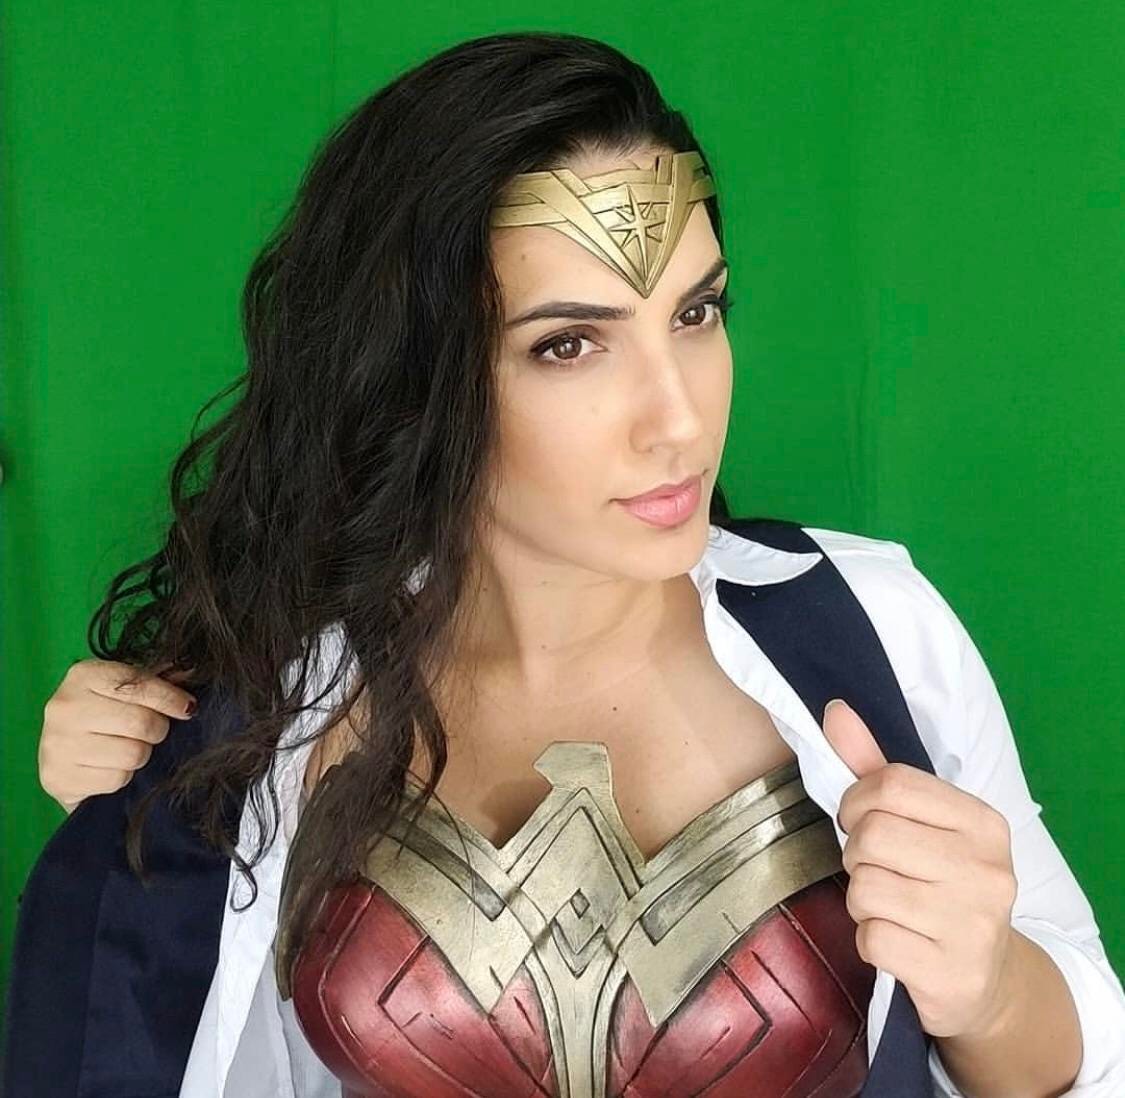 Uncensored Photoshoot Of Wonder Woman Gal Gadot.